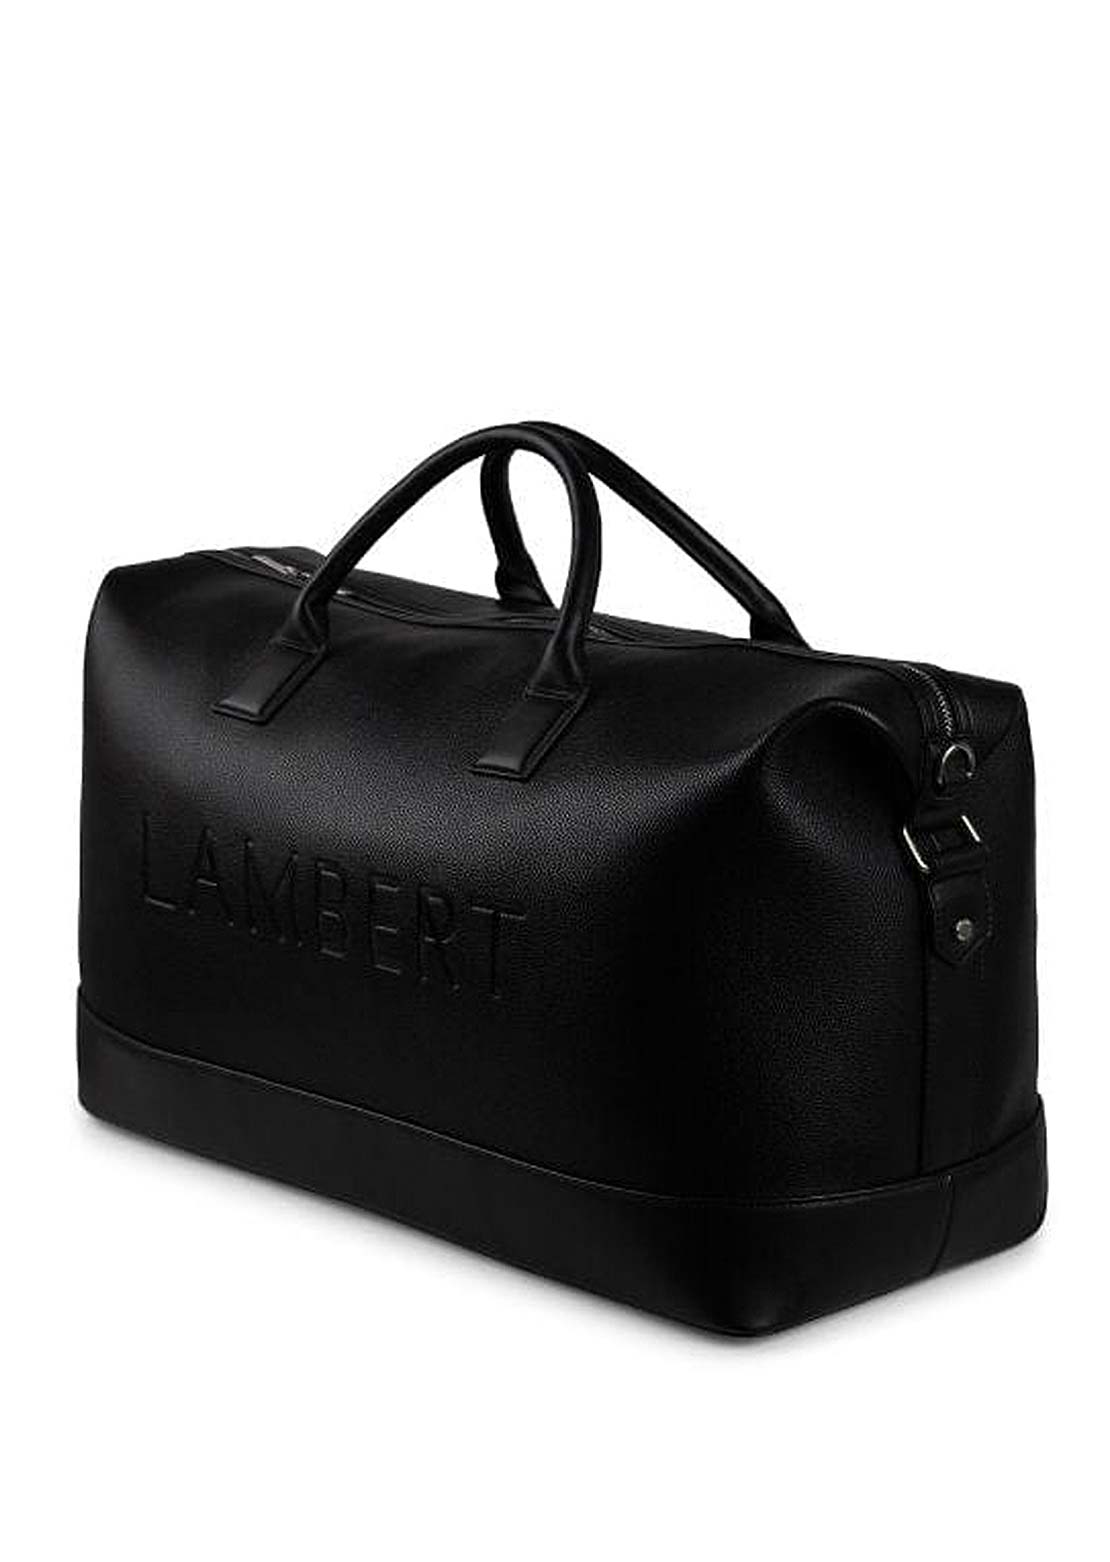 Lambert Women&#39;s June Vegan Leather Travel Tote Bag Black Pebble